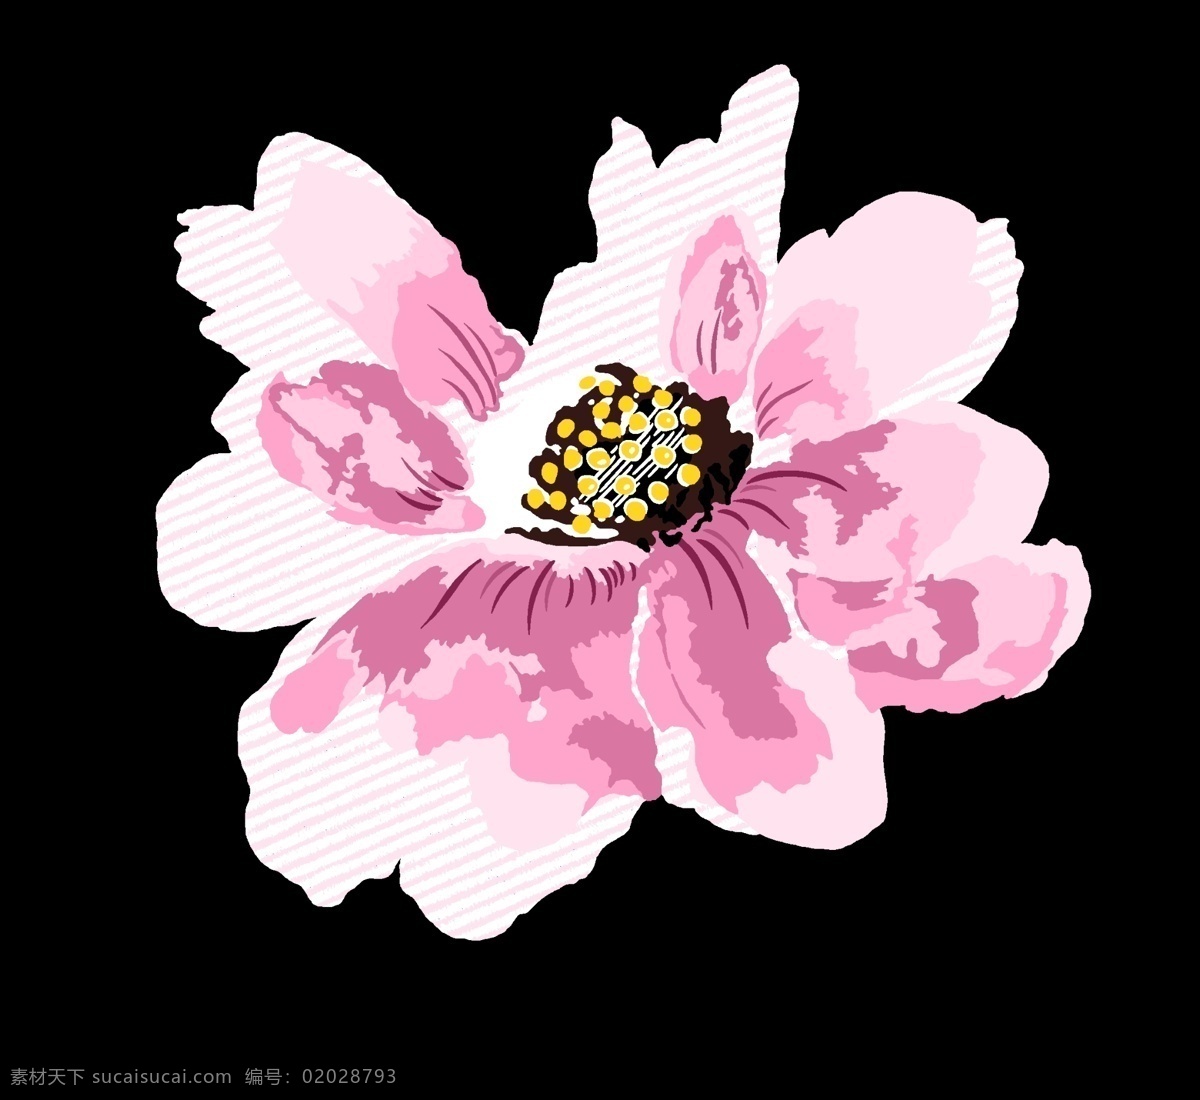 手绘花卉图片 抽象花 手绘花 水彩花卉 创意花卉 印花素材 高清 服装图案素材 家纺图案素材 花卉